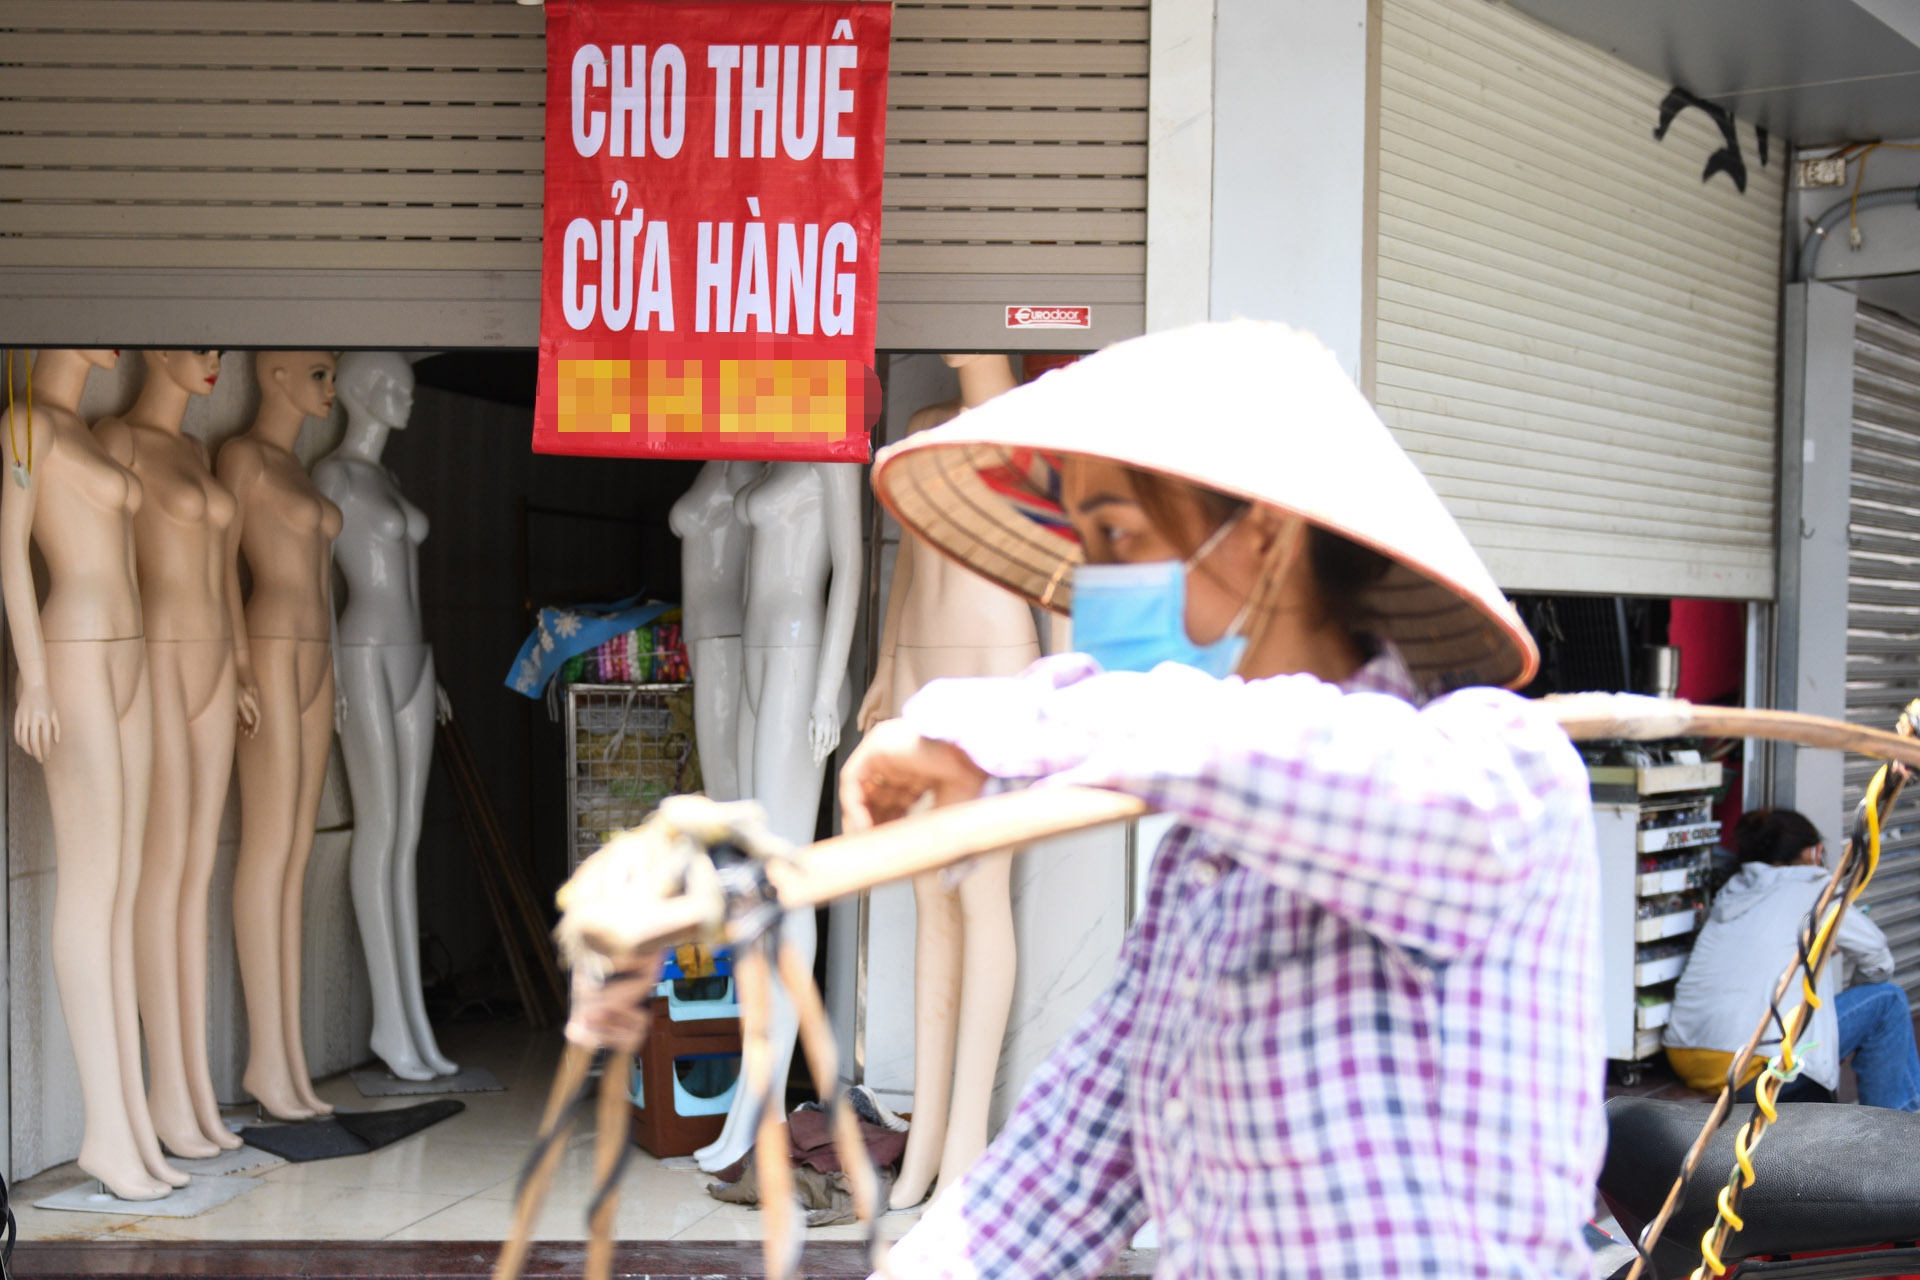 Hàng loạt nhà phố cổ Hà Nội treo biển cho thuê, bán nhà - Ảnh 7.